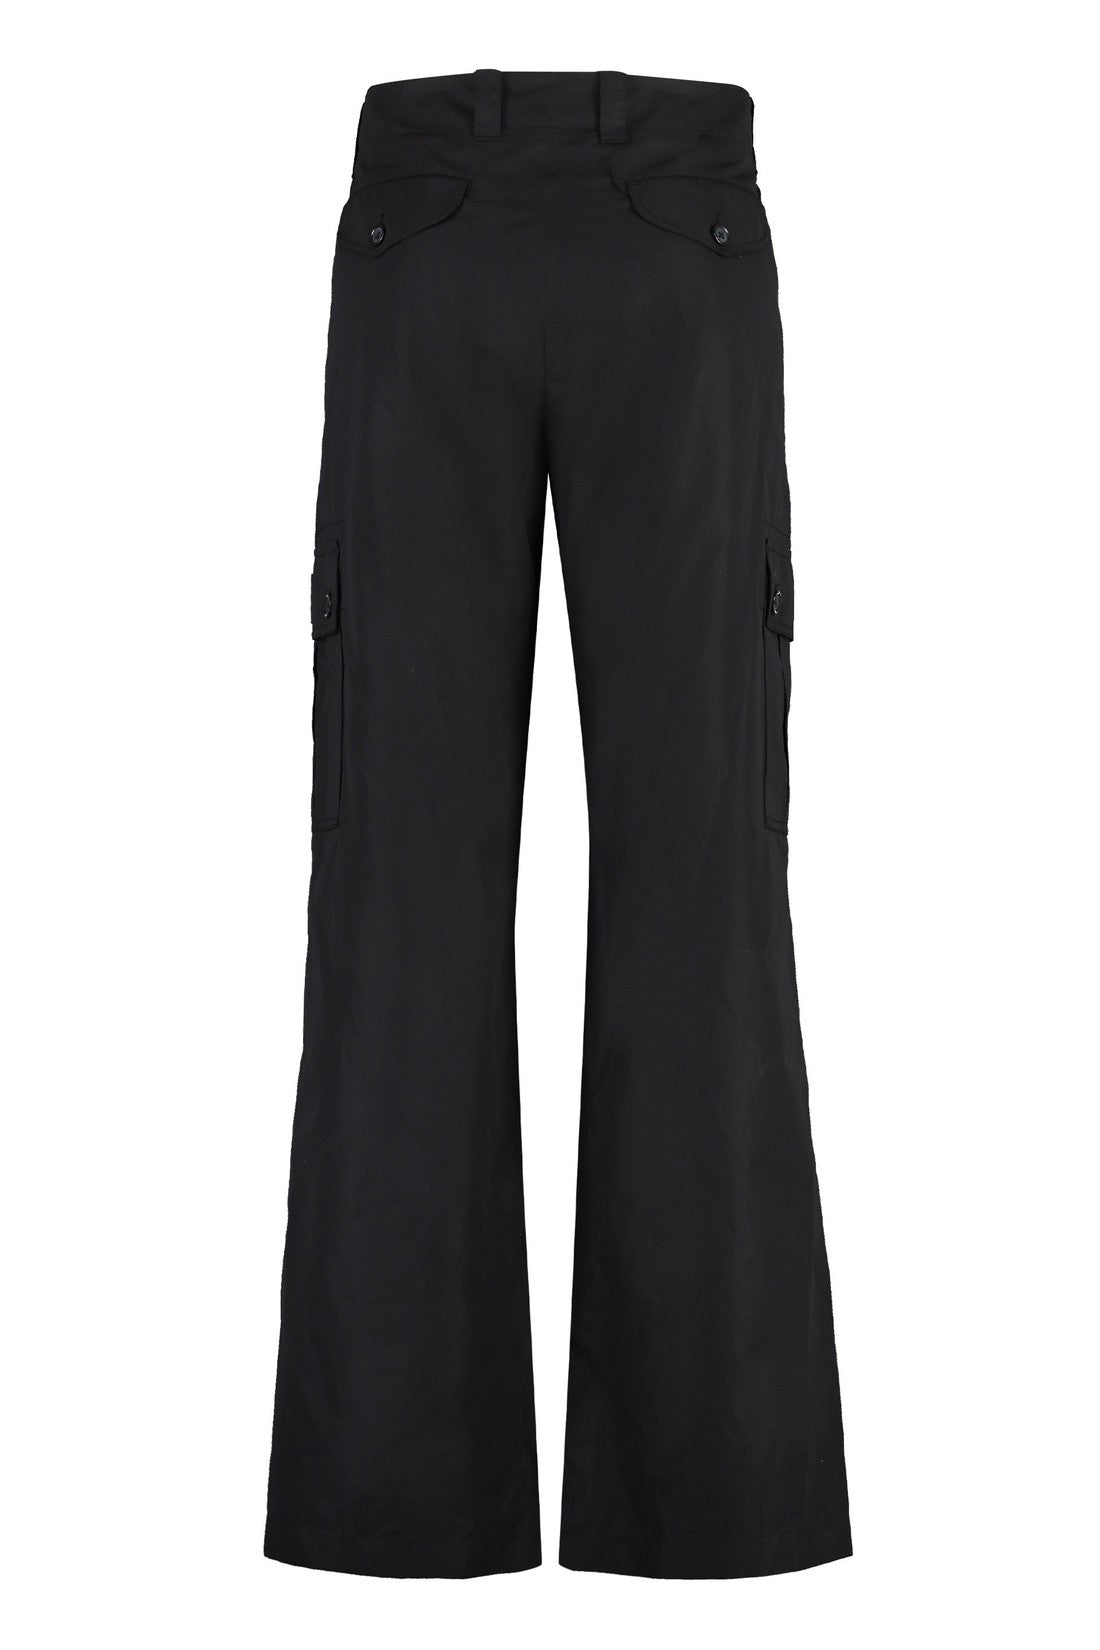 Dolce & Gabbana-OUTLET-SALE-Cotton cargo-trousers-ARCHIVIST